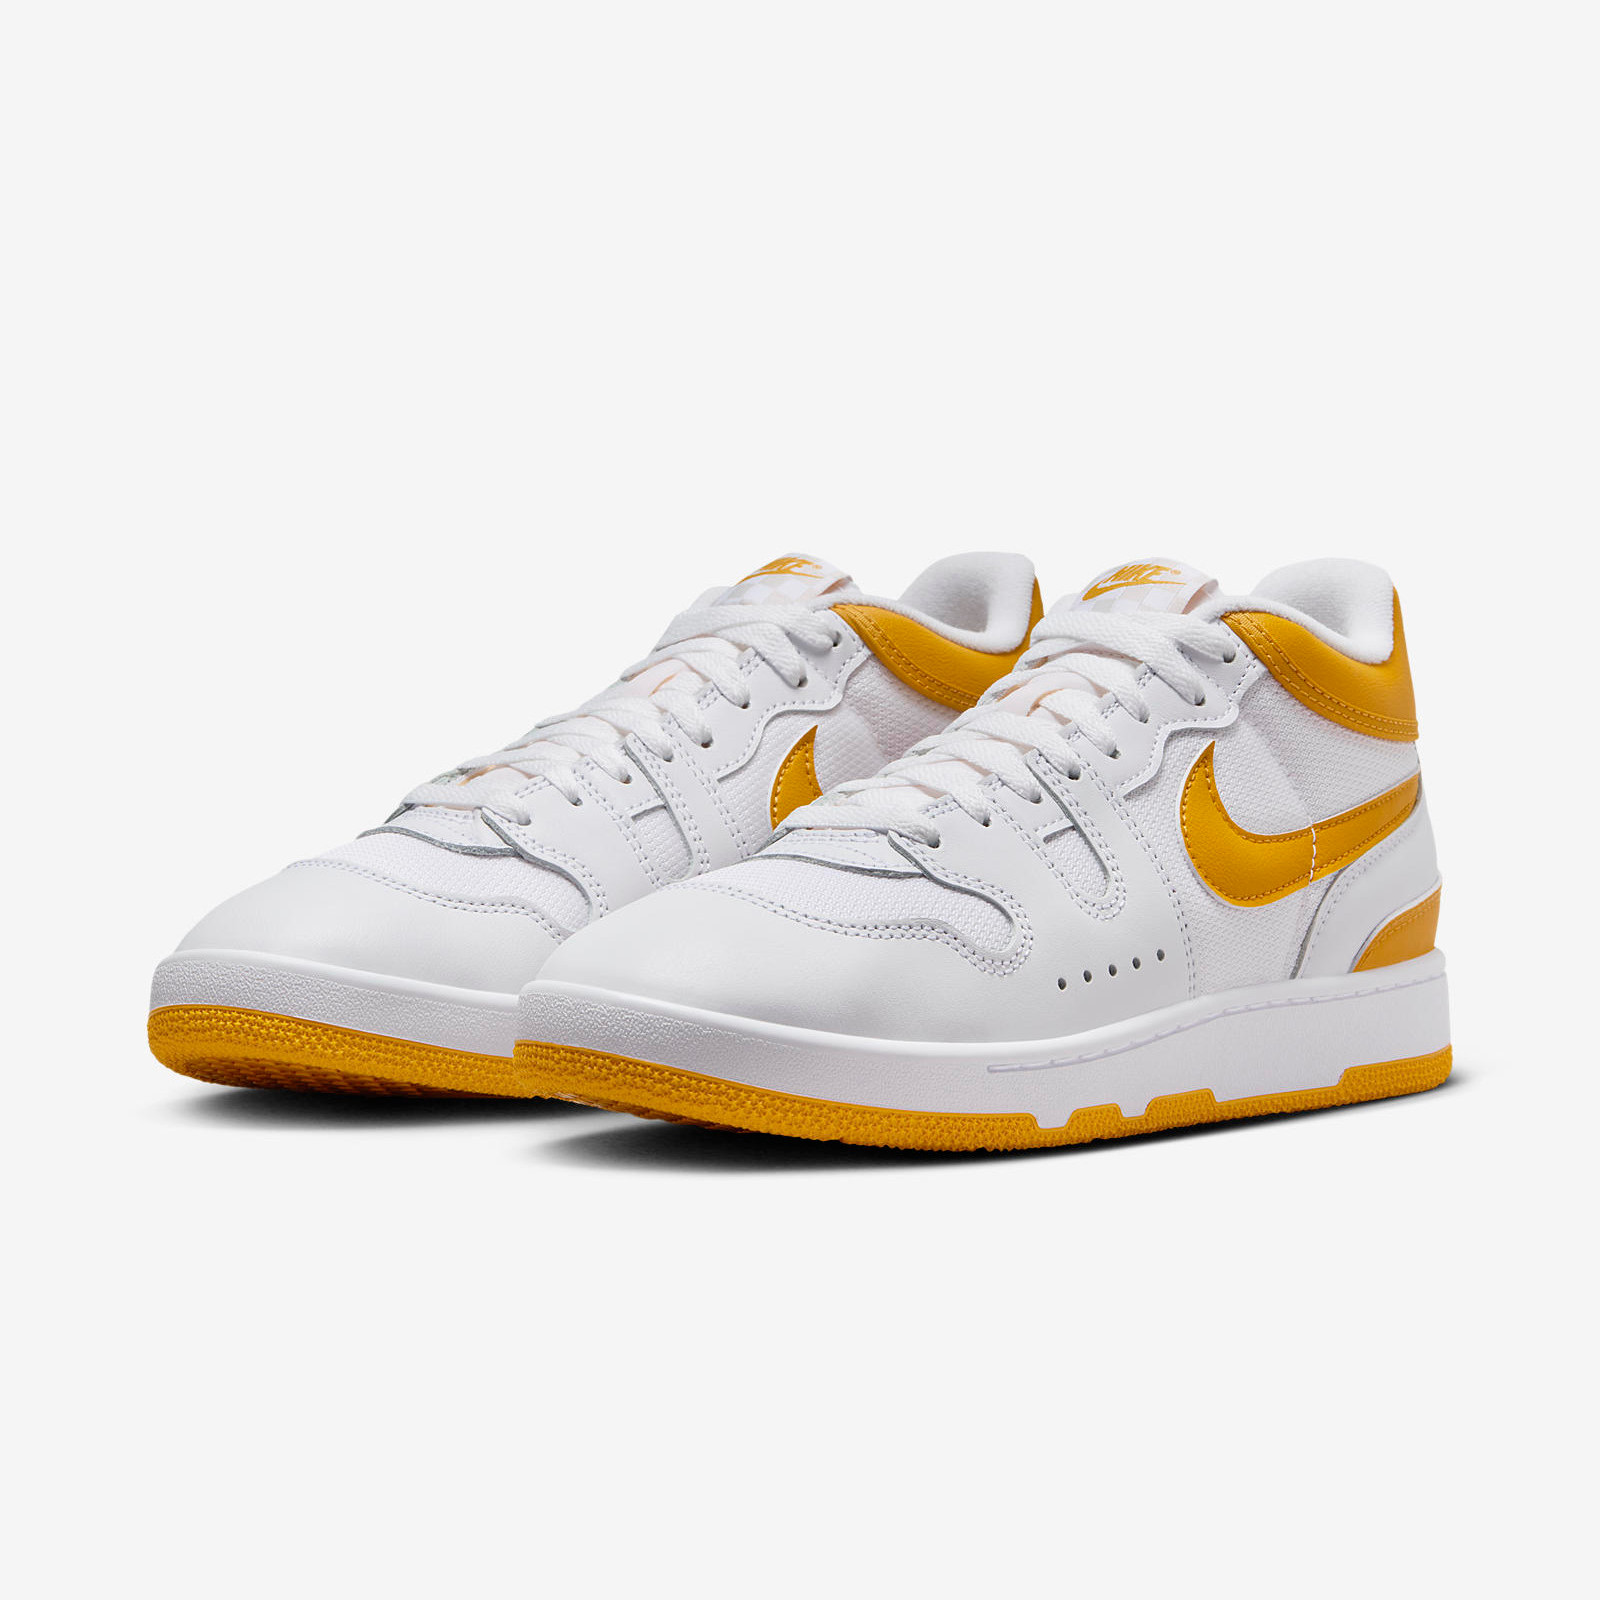 Nike Attack
White / Yellow Ochre